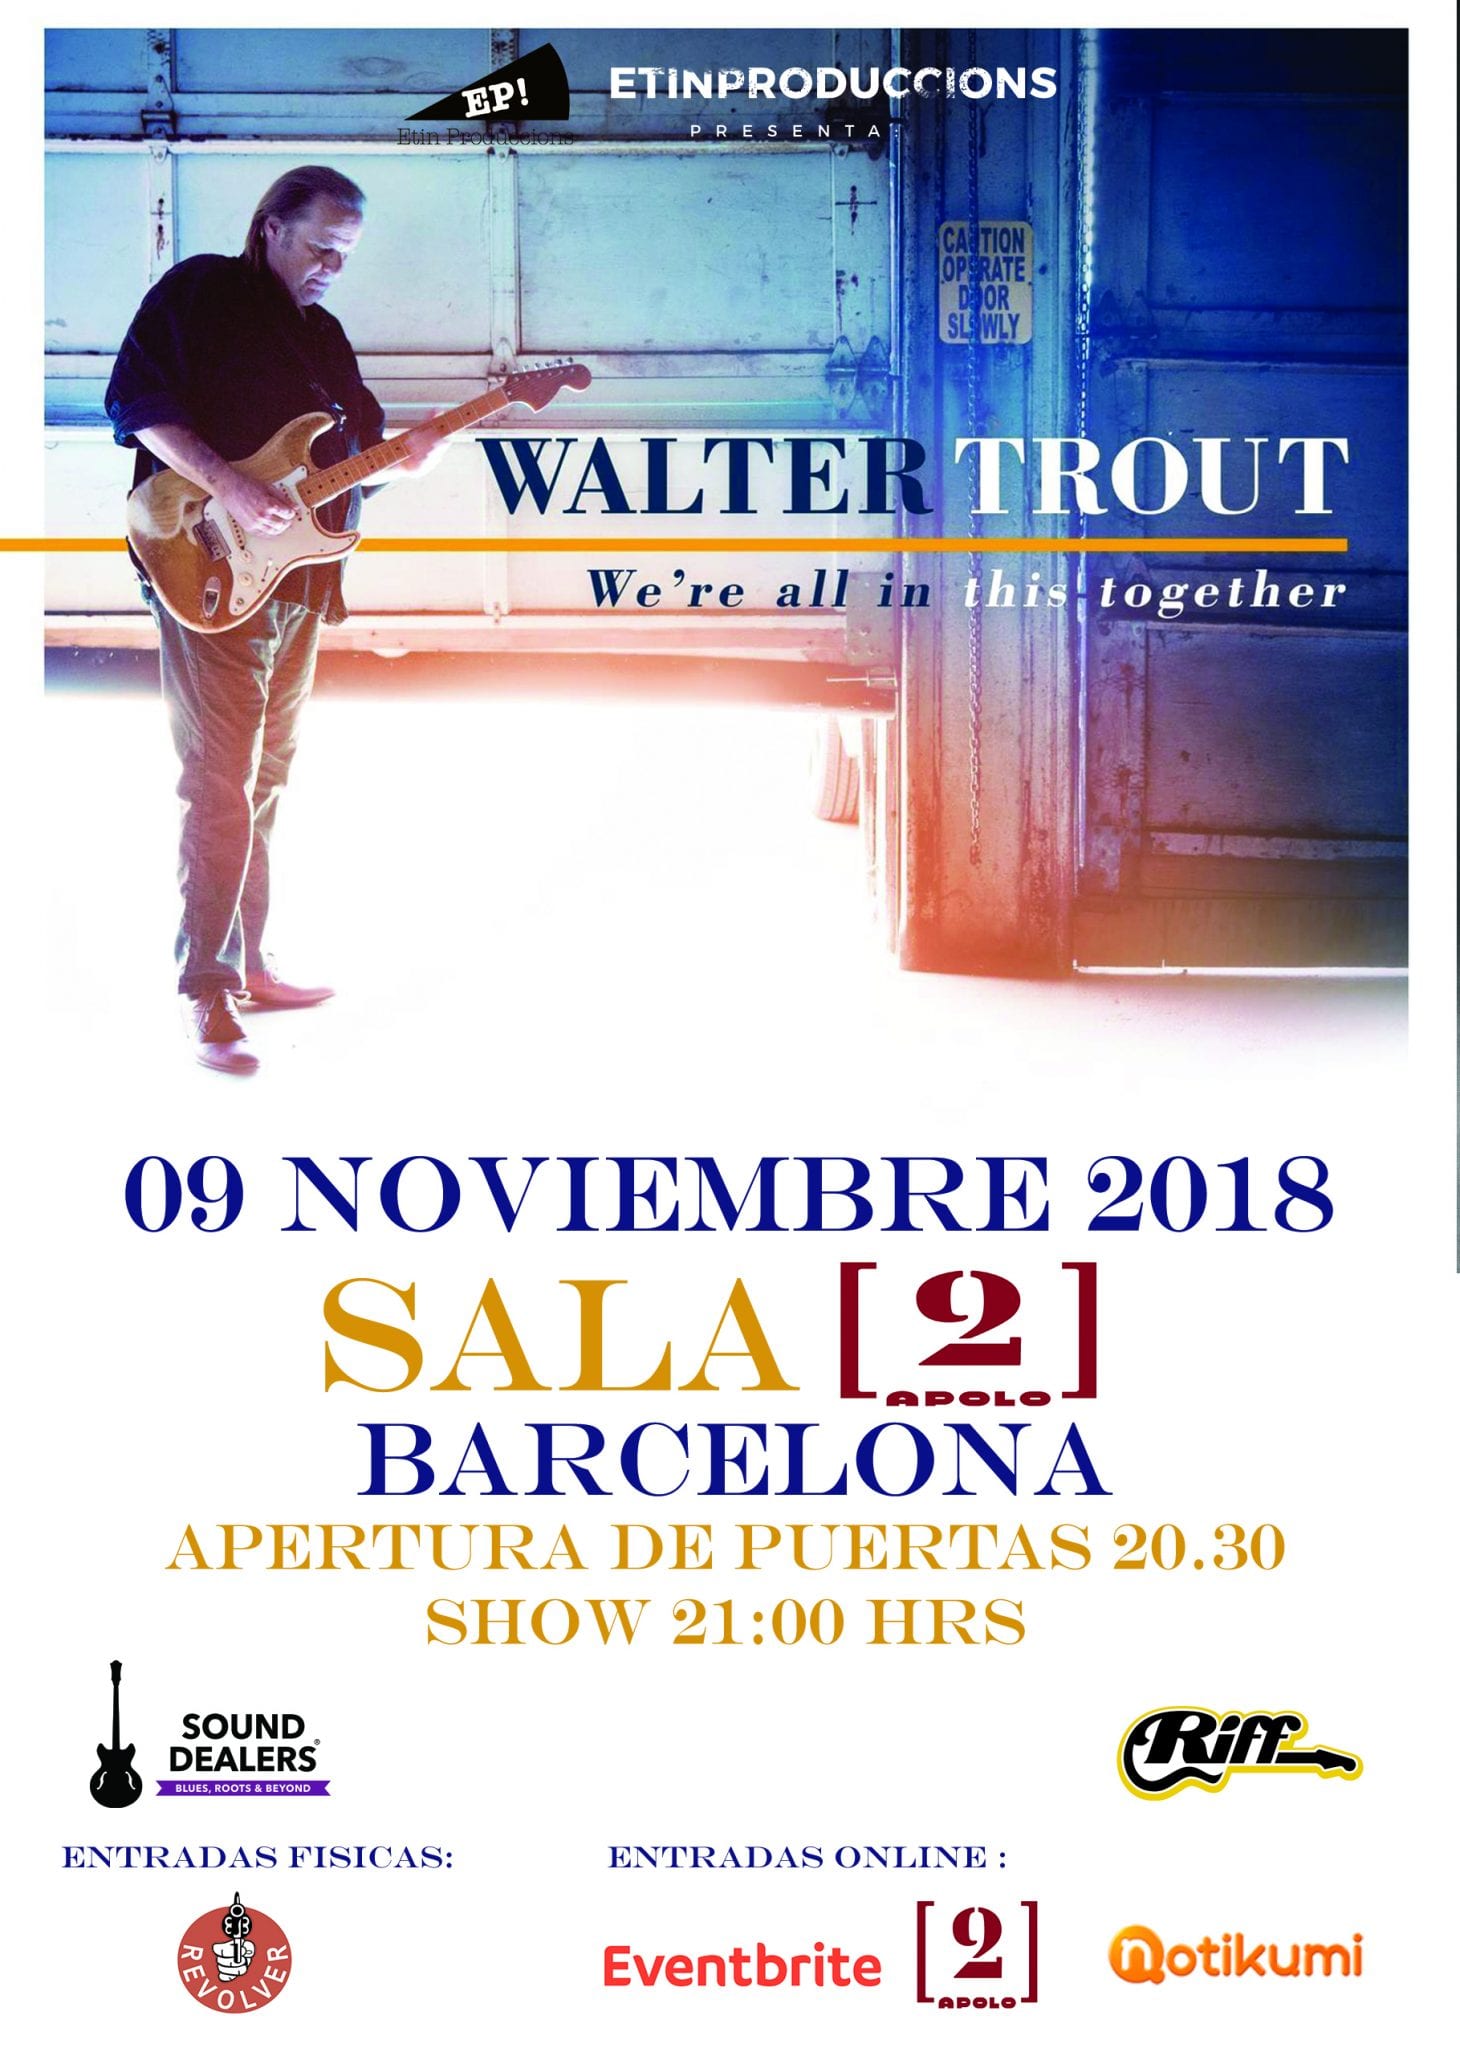 WALTER TROUT de gira por España en noviembre